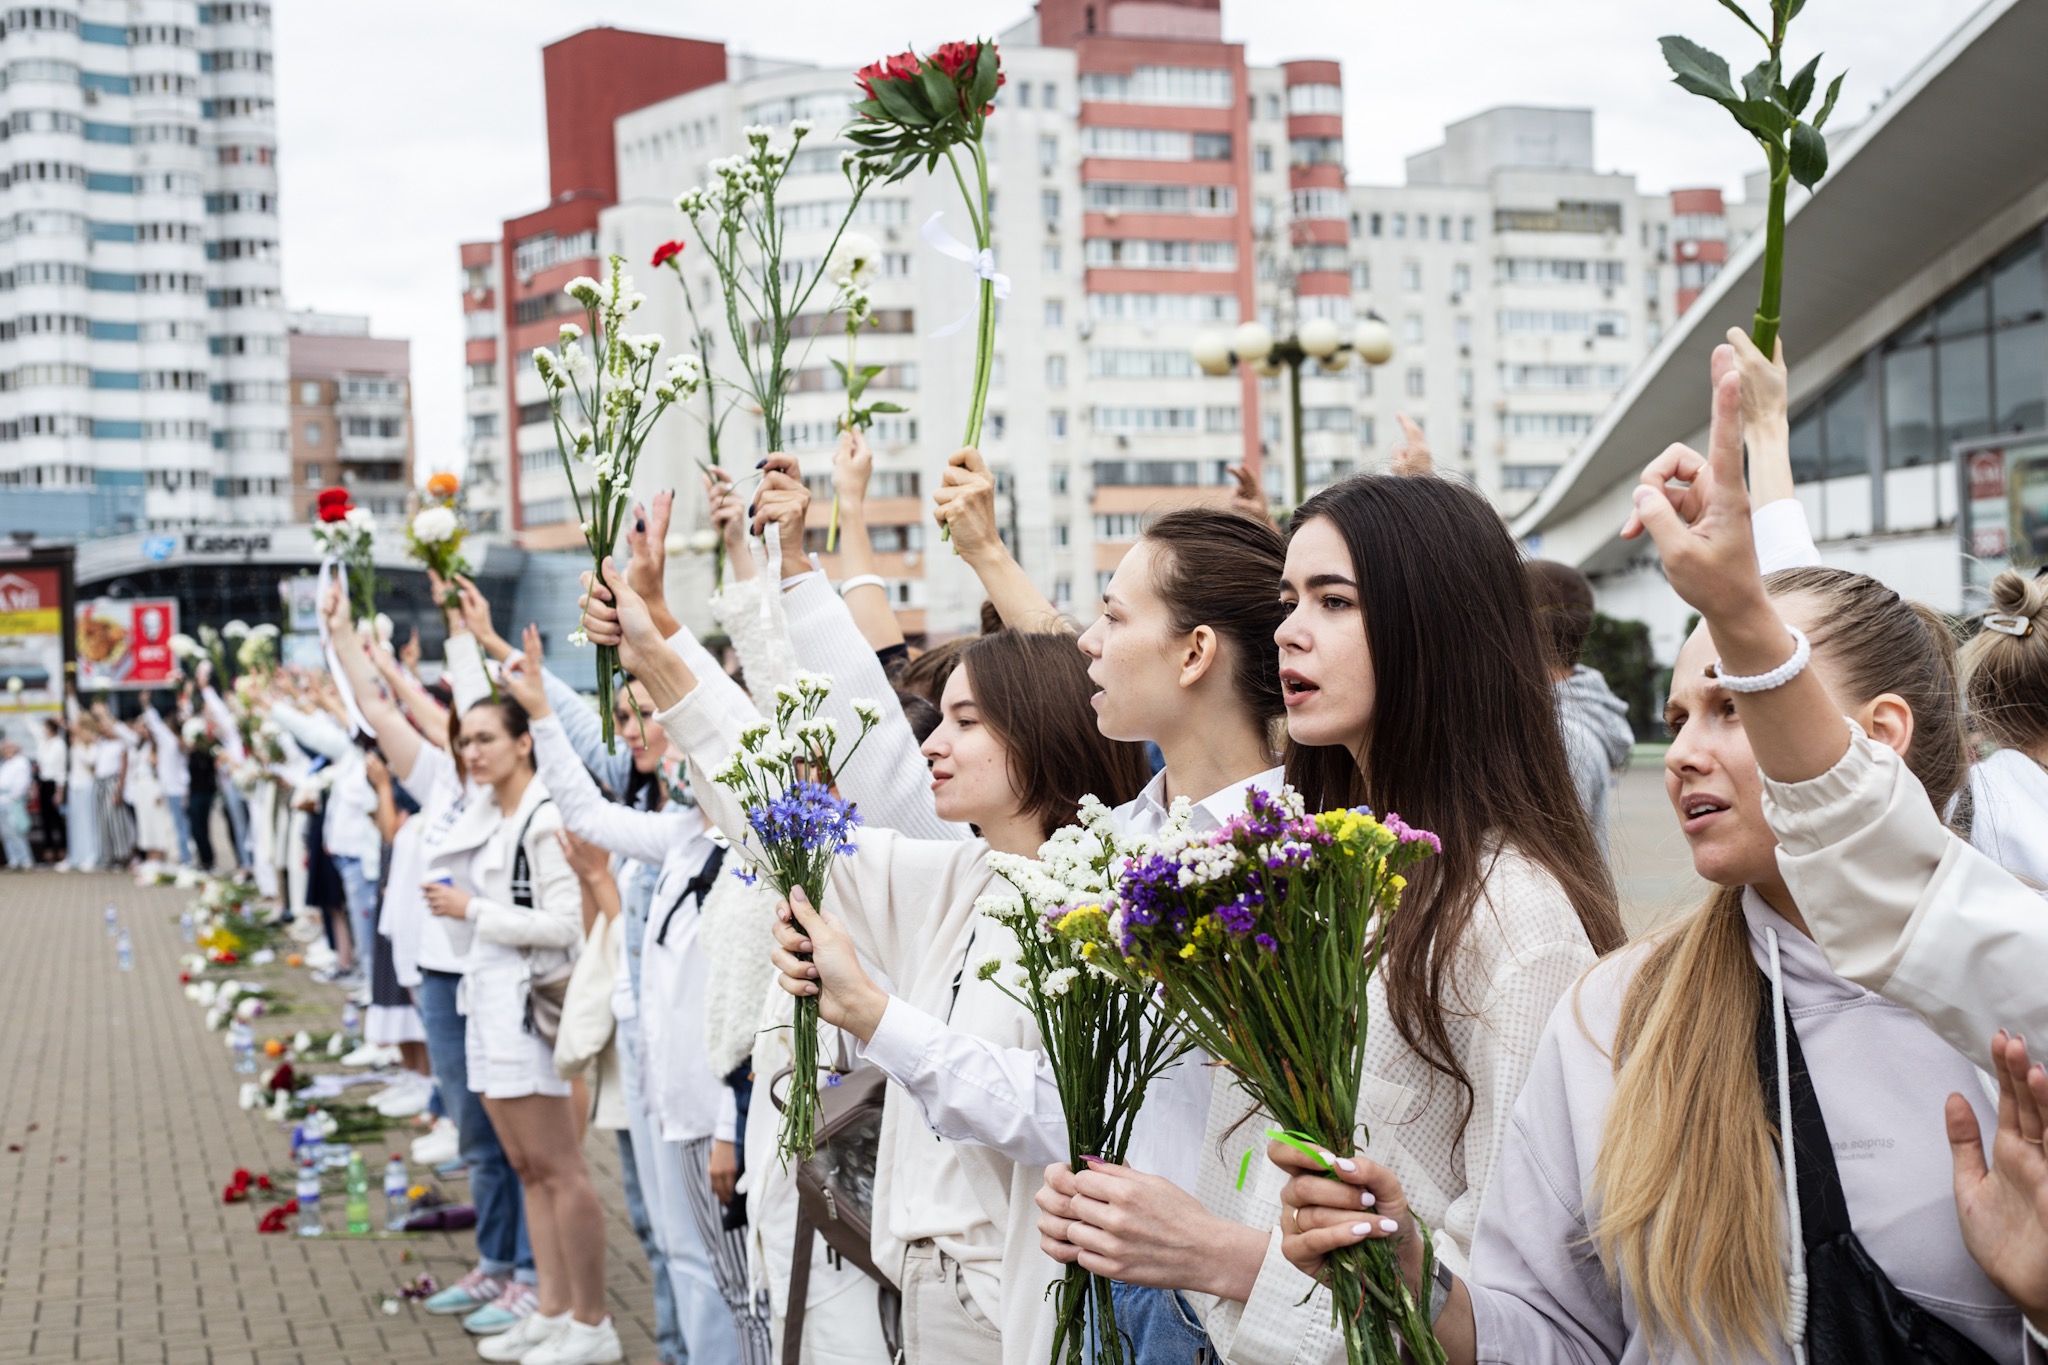 Białoruś. Protest kobiet w Mińsku